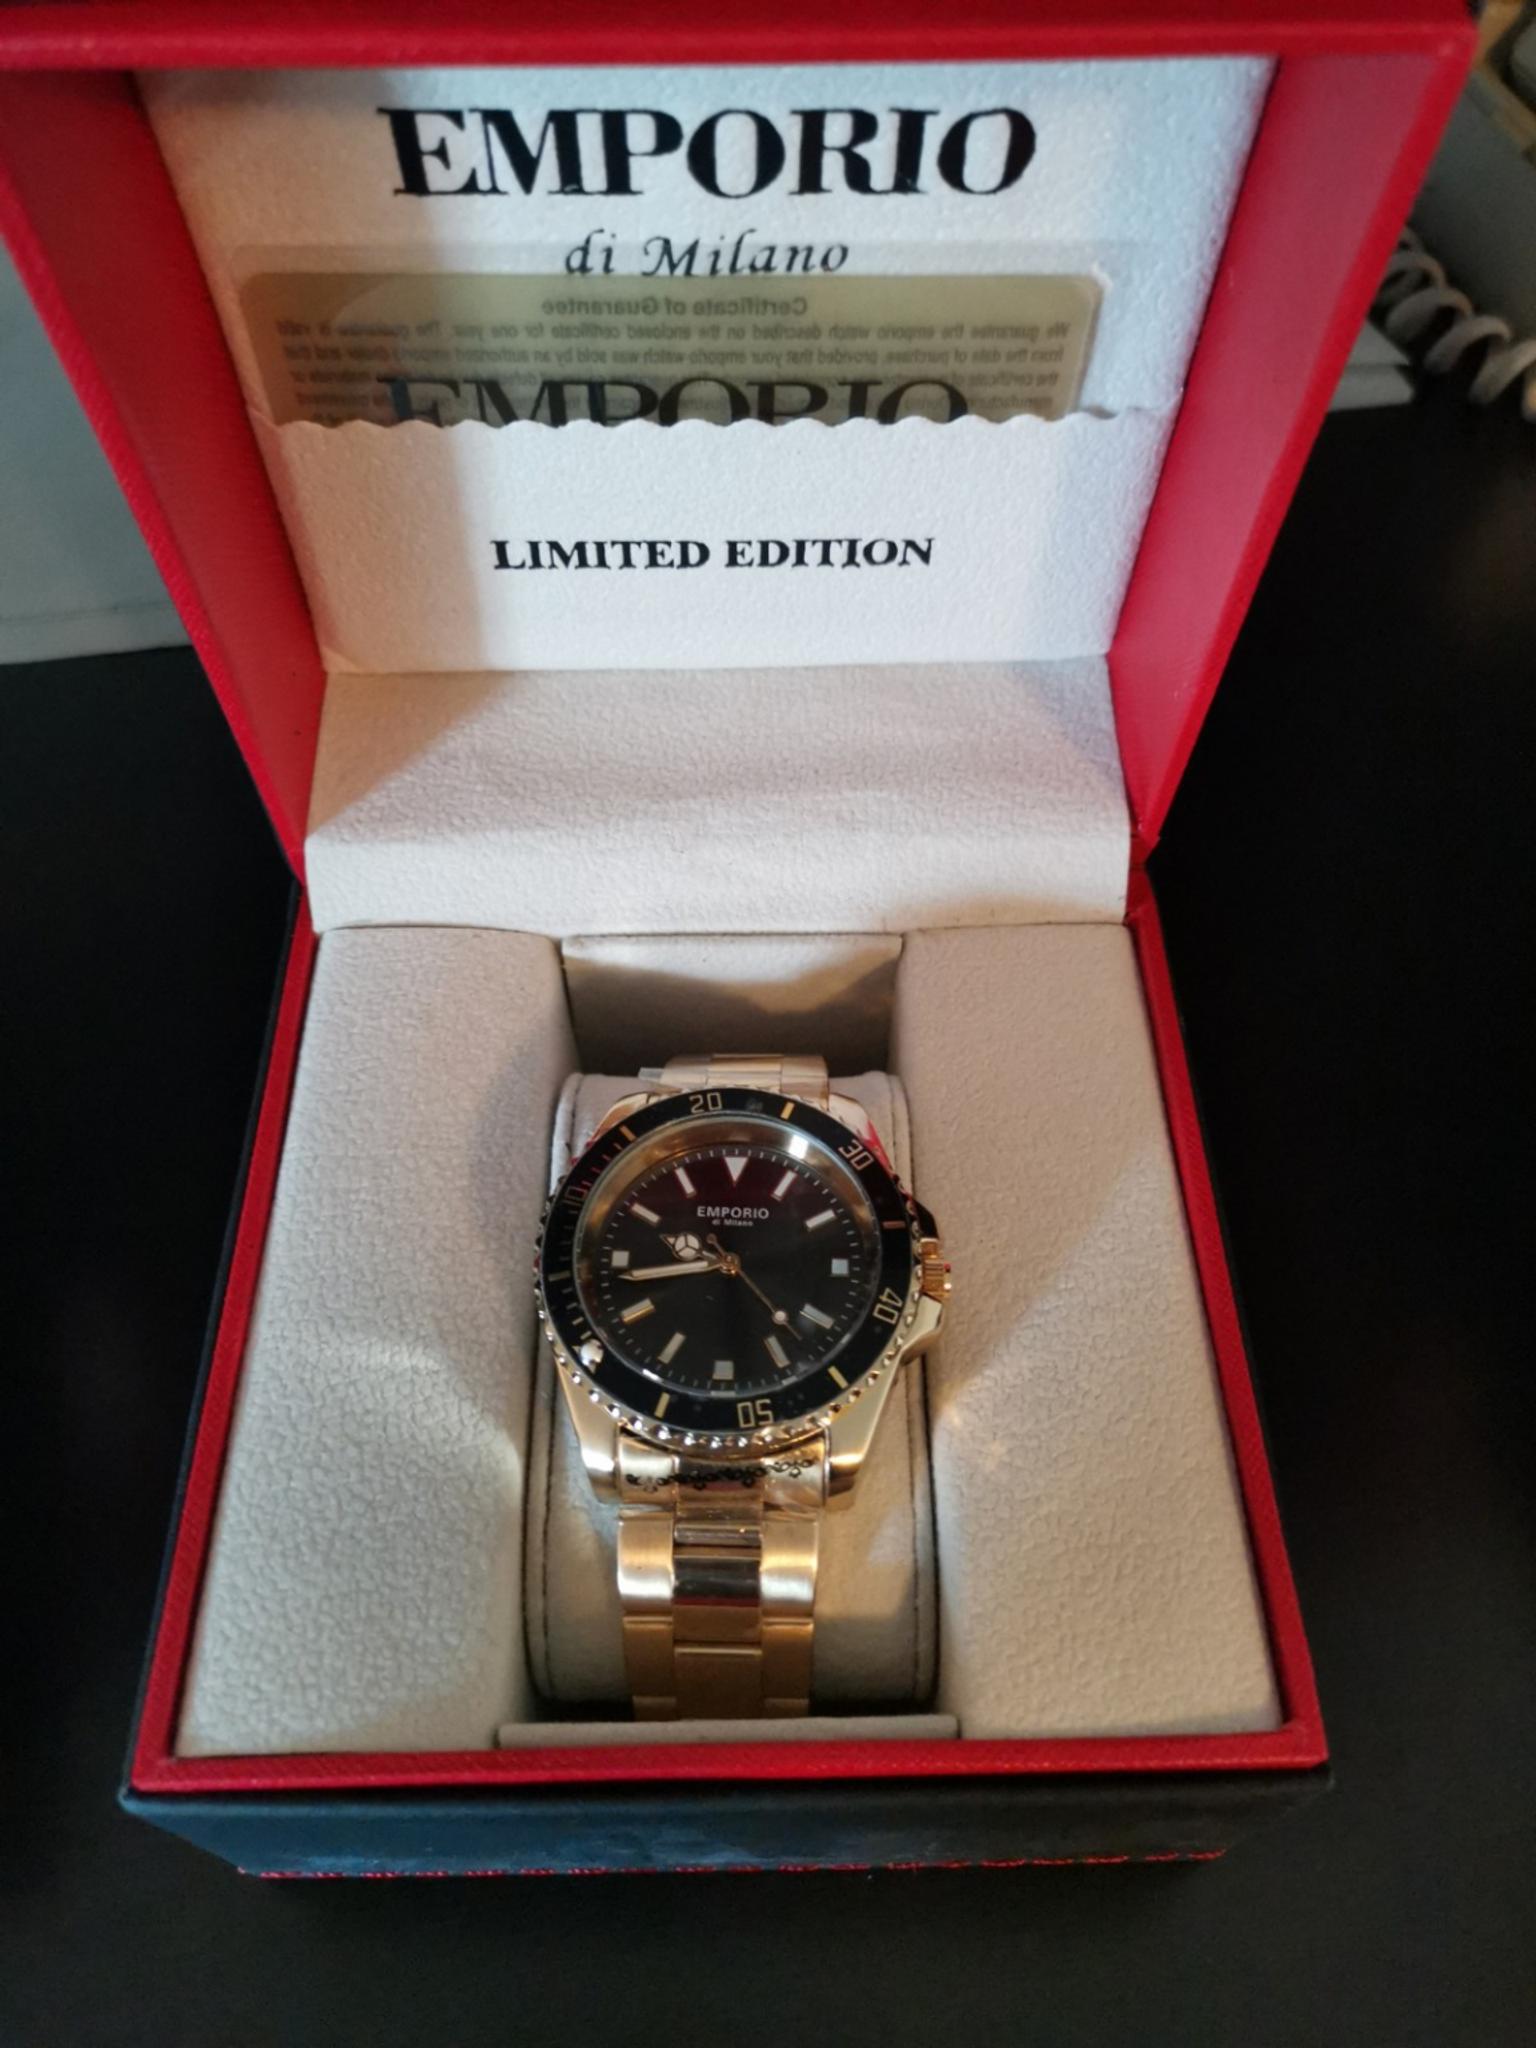 emporio di milano watches limited edition